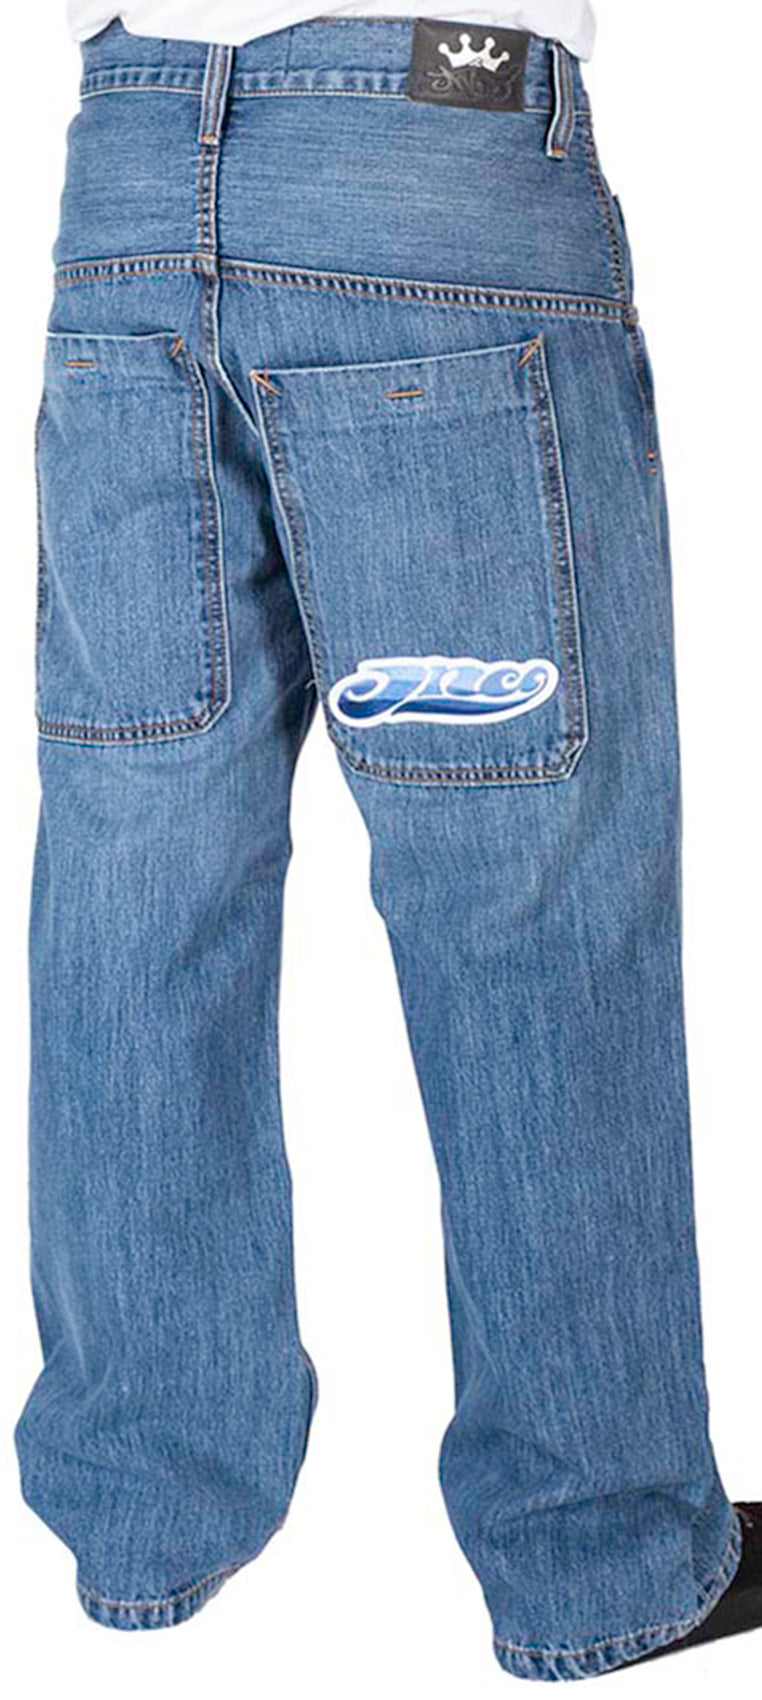 JNCO Jeans - JNCO Smoke Stacks Jeans (Stone Wash)